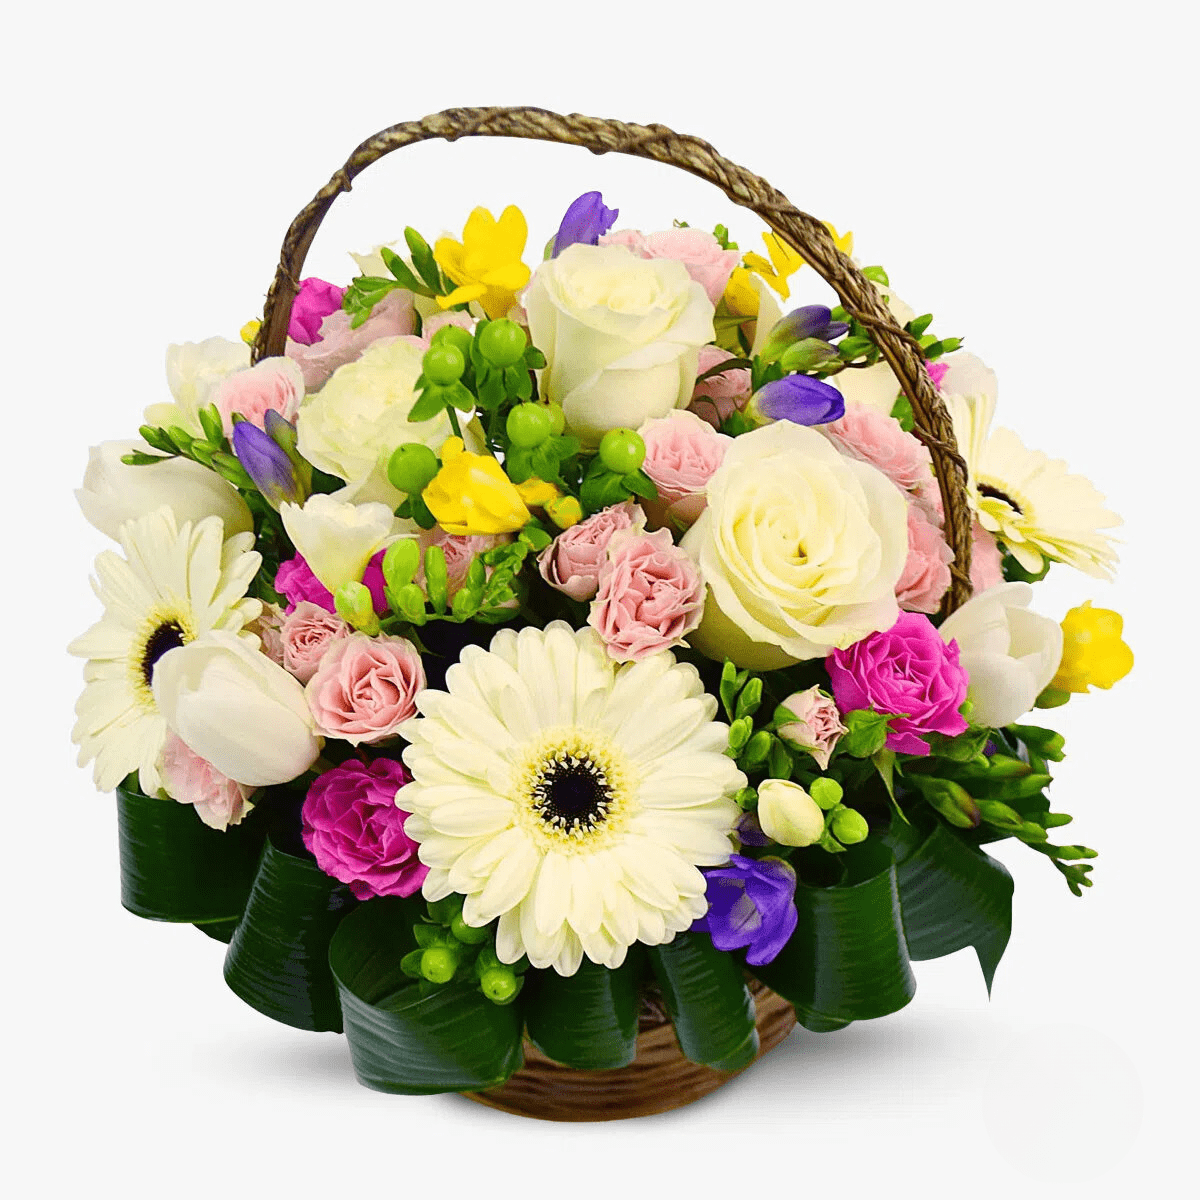 Cos cu flori – Aranjament cu irisi si trandafiri – Standard Aranjament